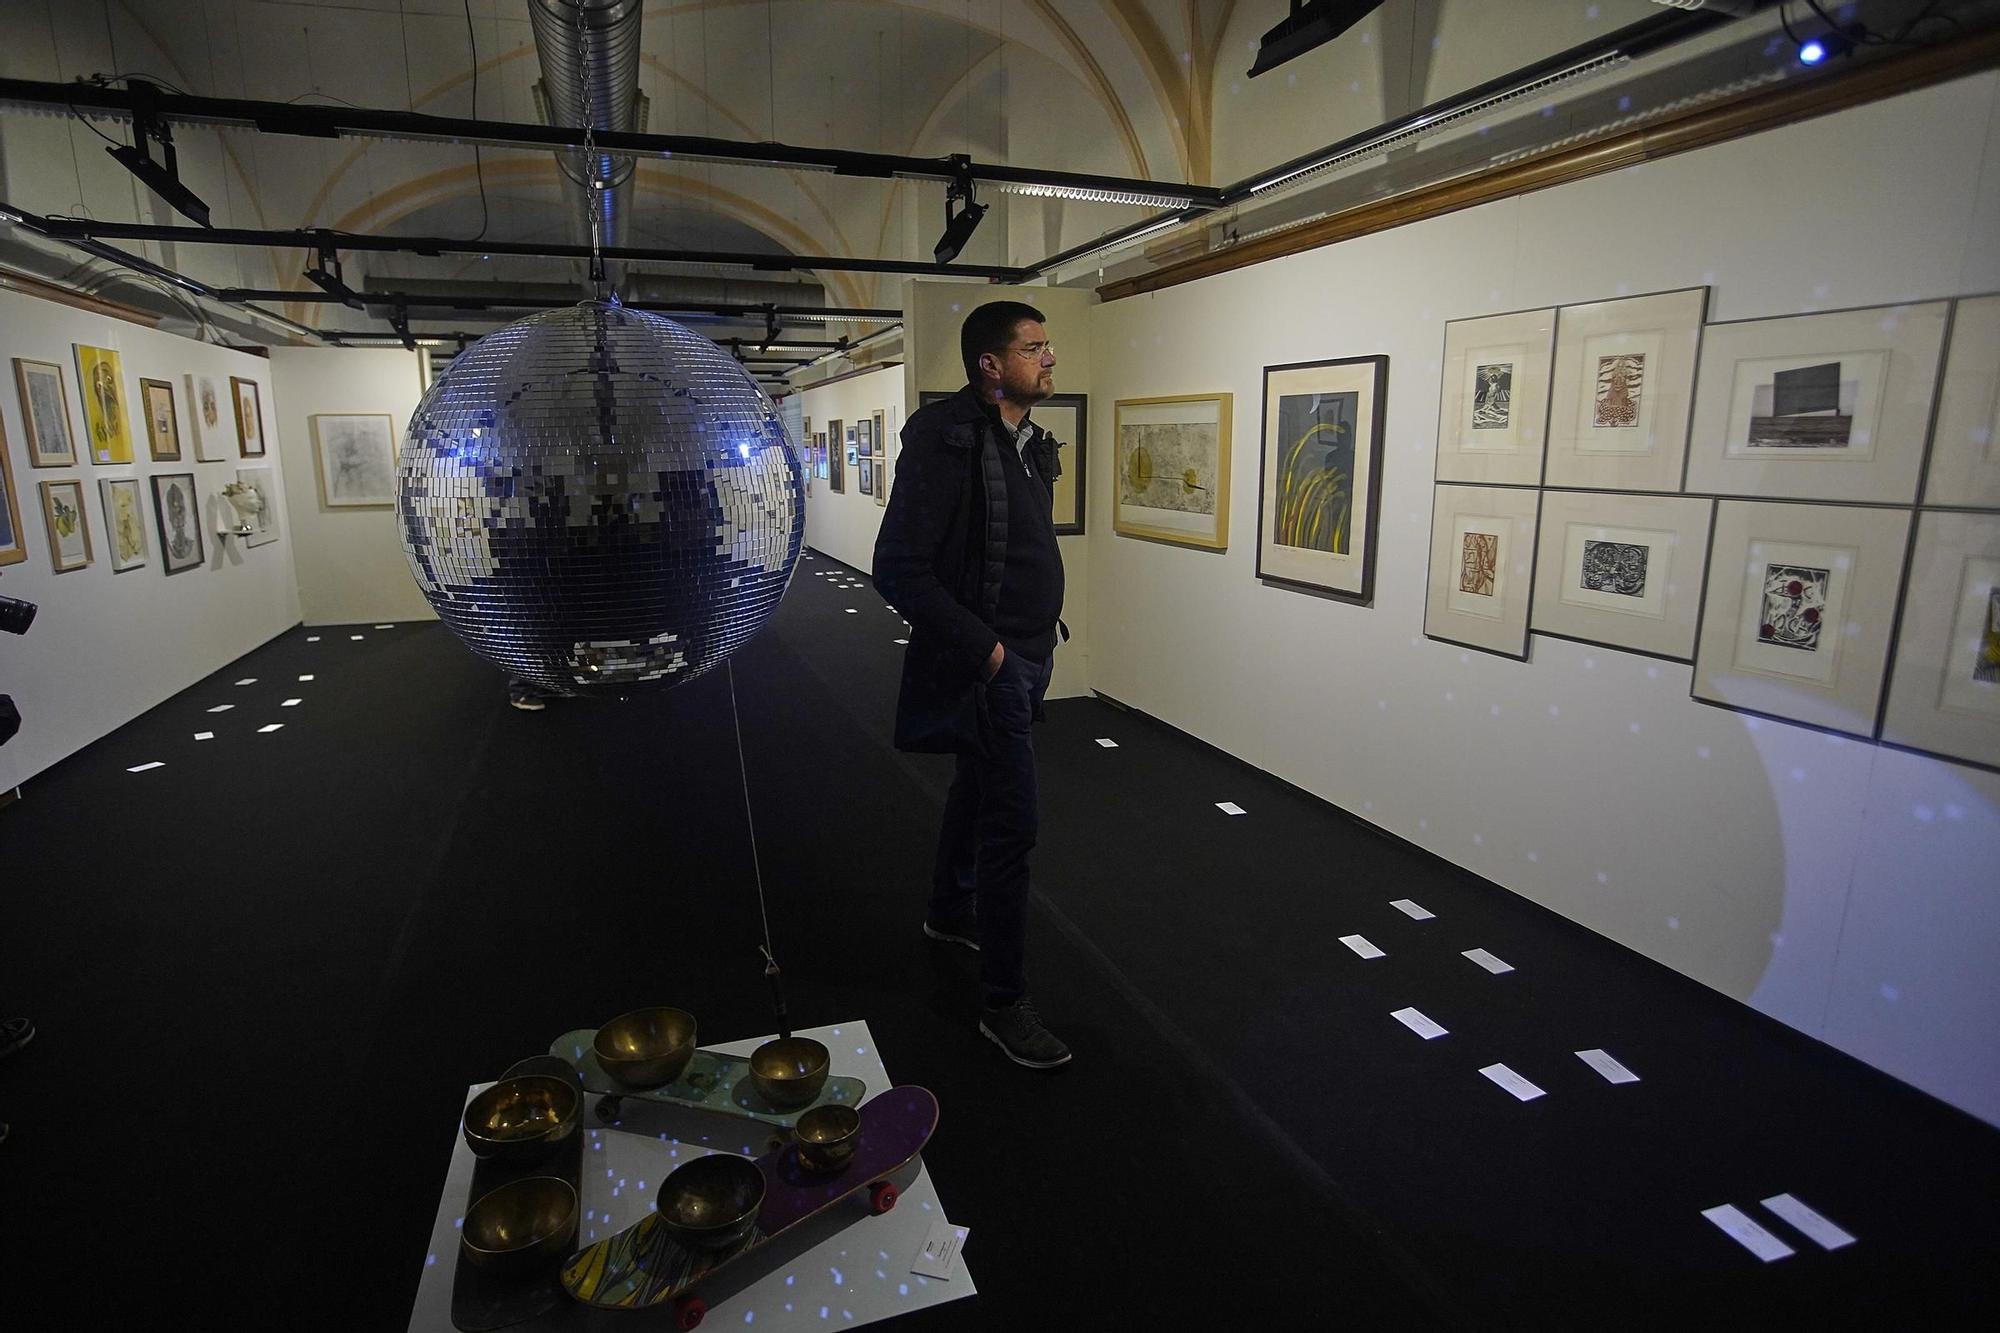 Els 120 artistes dels vint anys de la Fundació Valvi, reunits en una exposició